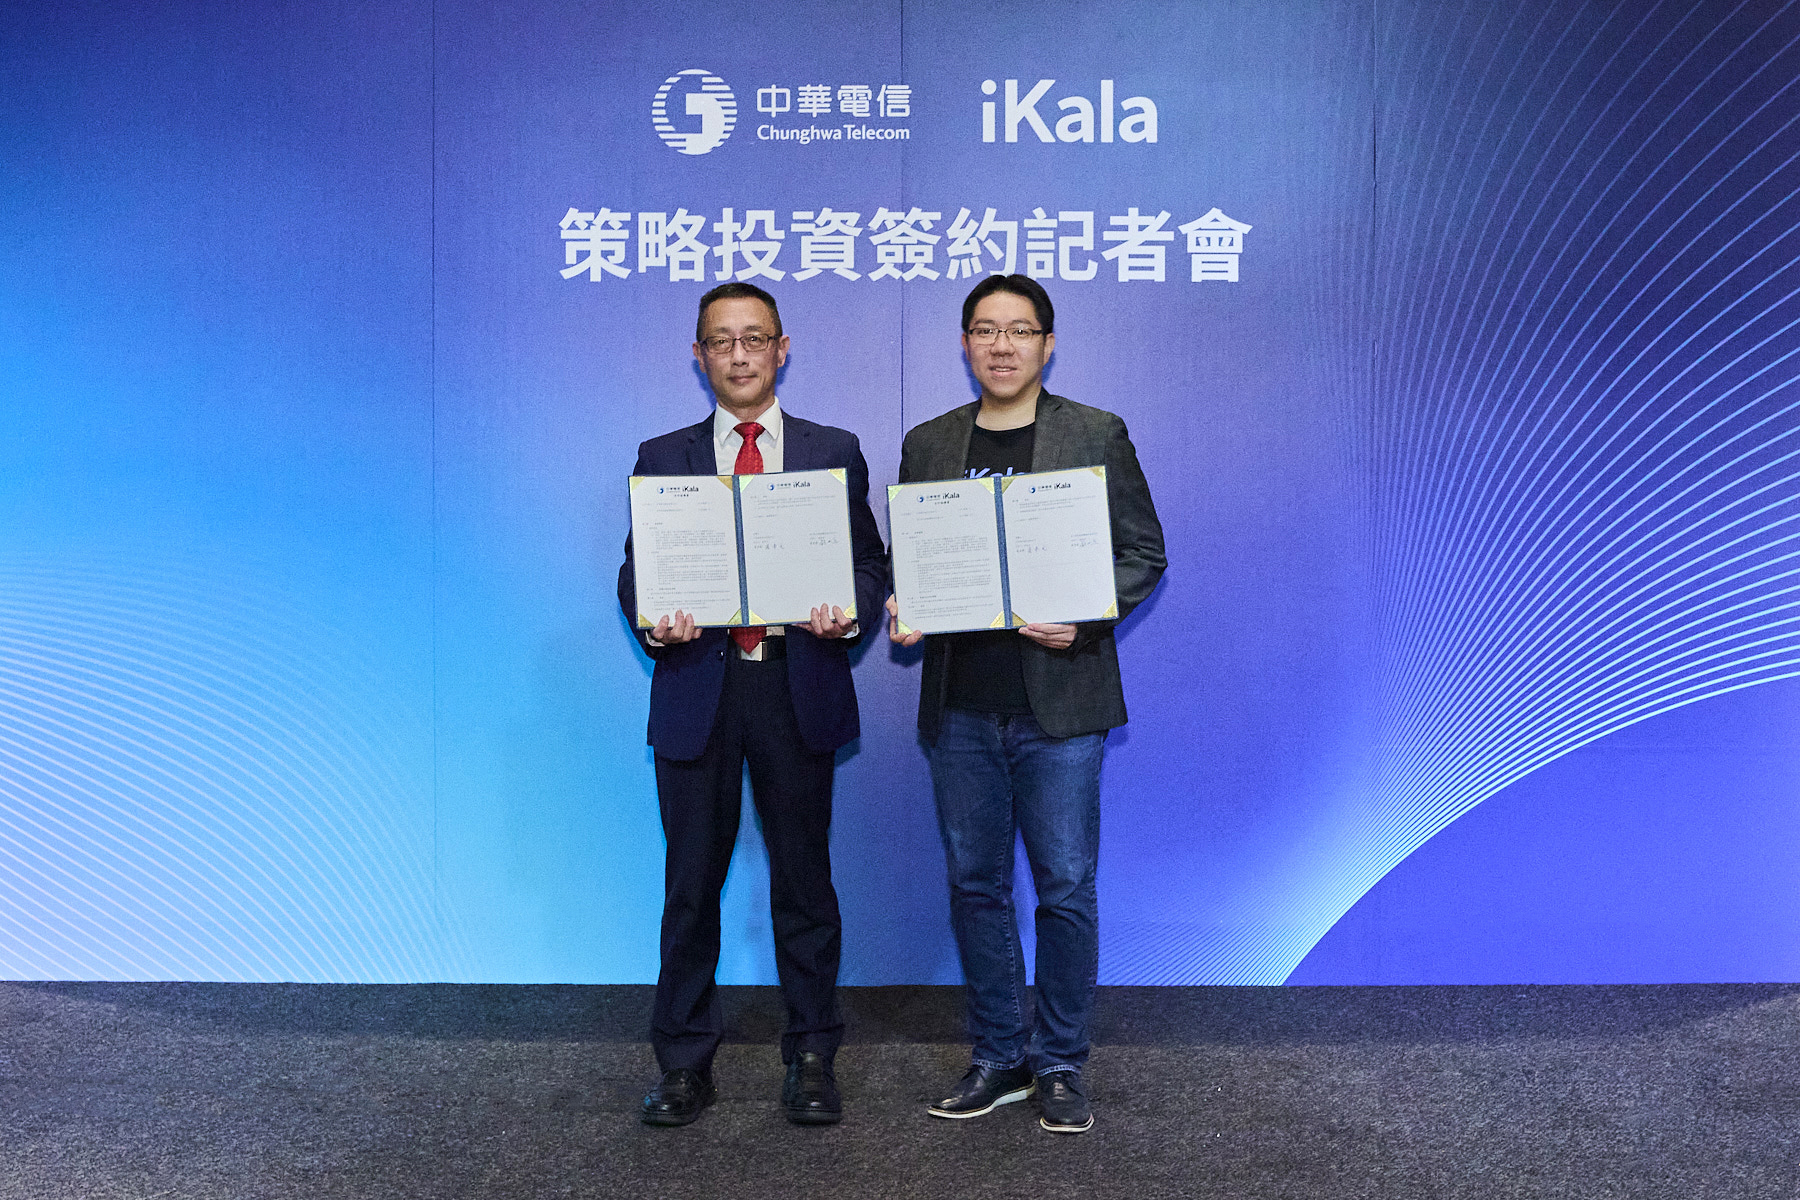 中华电信策略性领投AI（人工智慧）新创公司iKala。左为中华电信企业客户分公司总经理张本元、右为iKala共同创办人暨执行长程世嘉。图／iKala提供